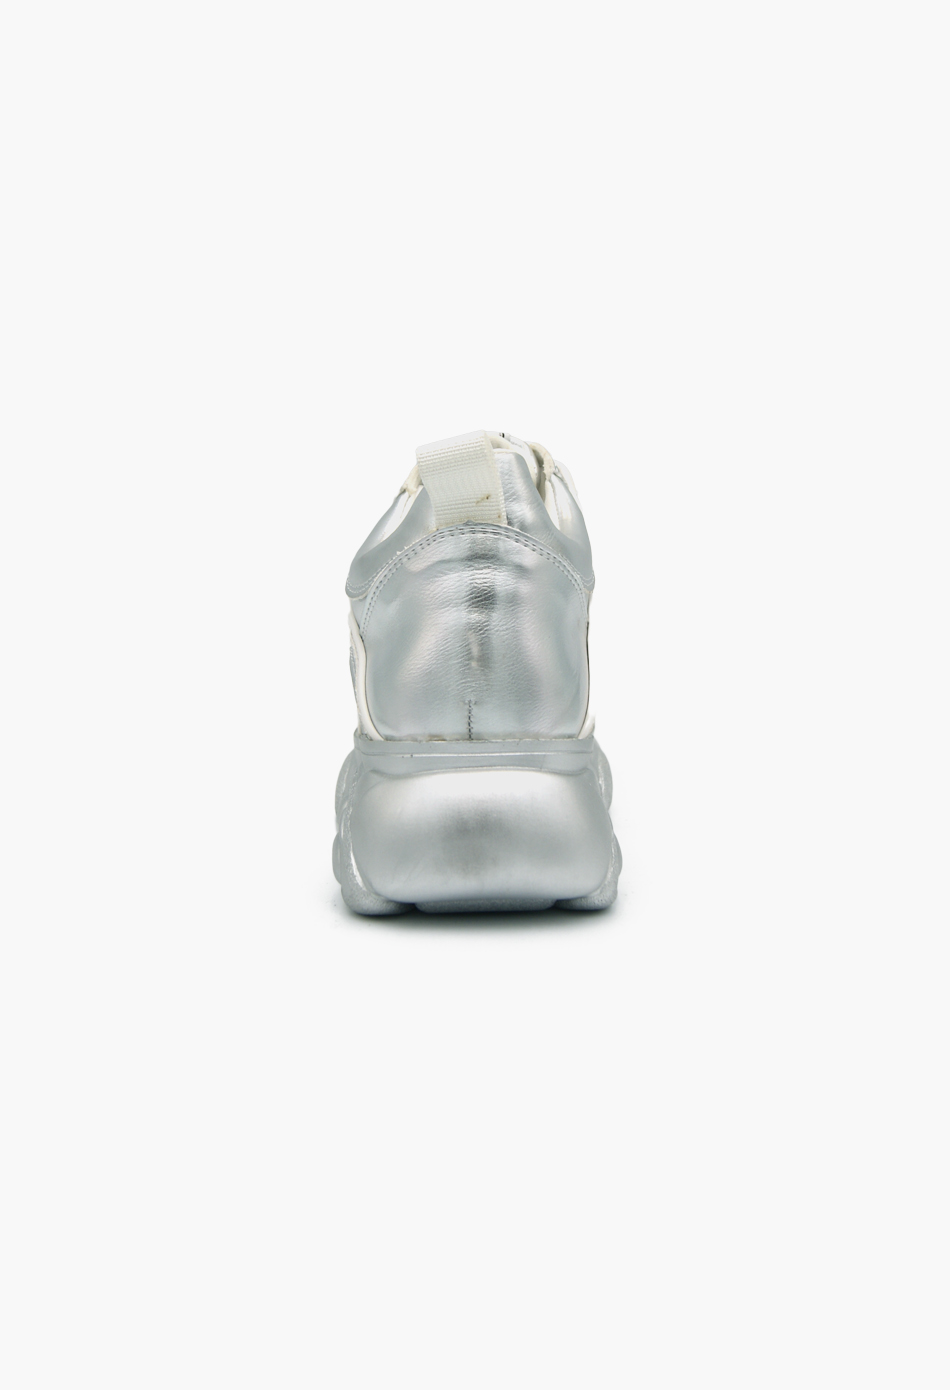 Γυναικεία Chunky Sneakers Wedges Ασημί / H9006-silver ΑΘΛΗΤΙΚΑ με ΠΛΑΤΦΟΡΜΑ joya.gr